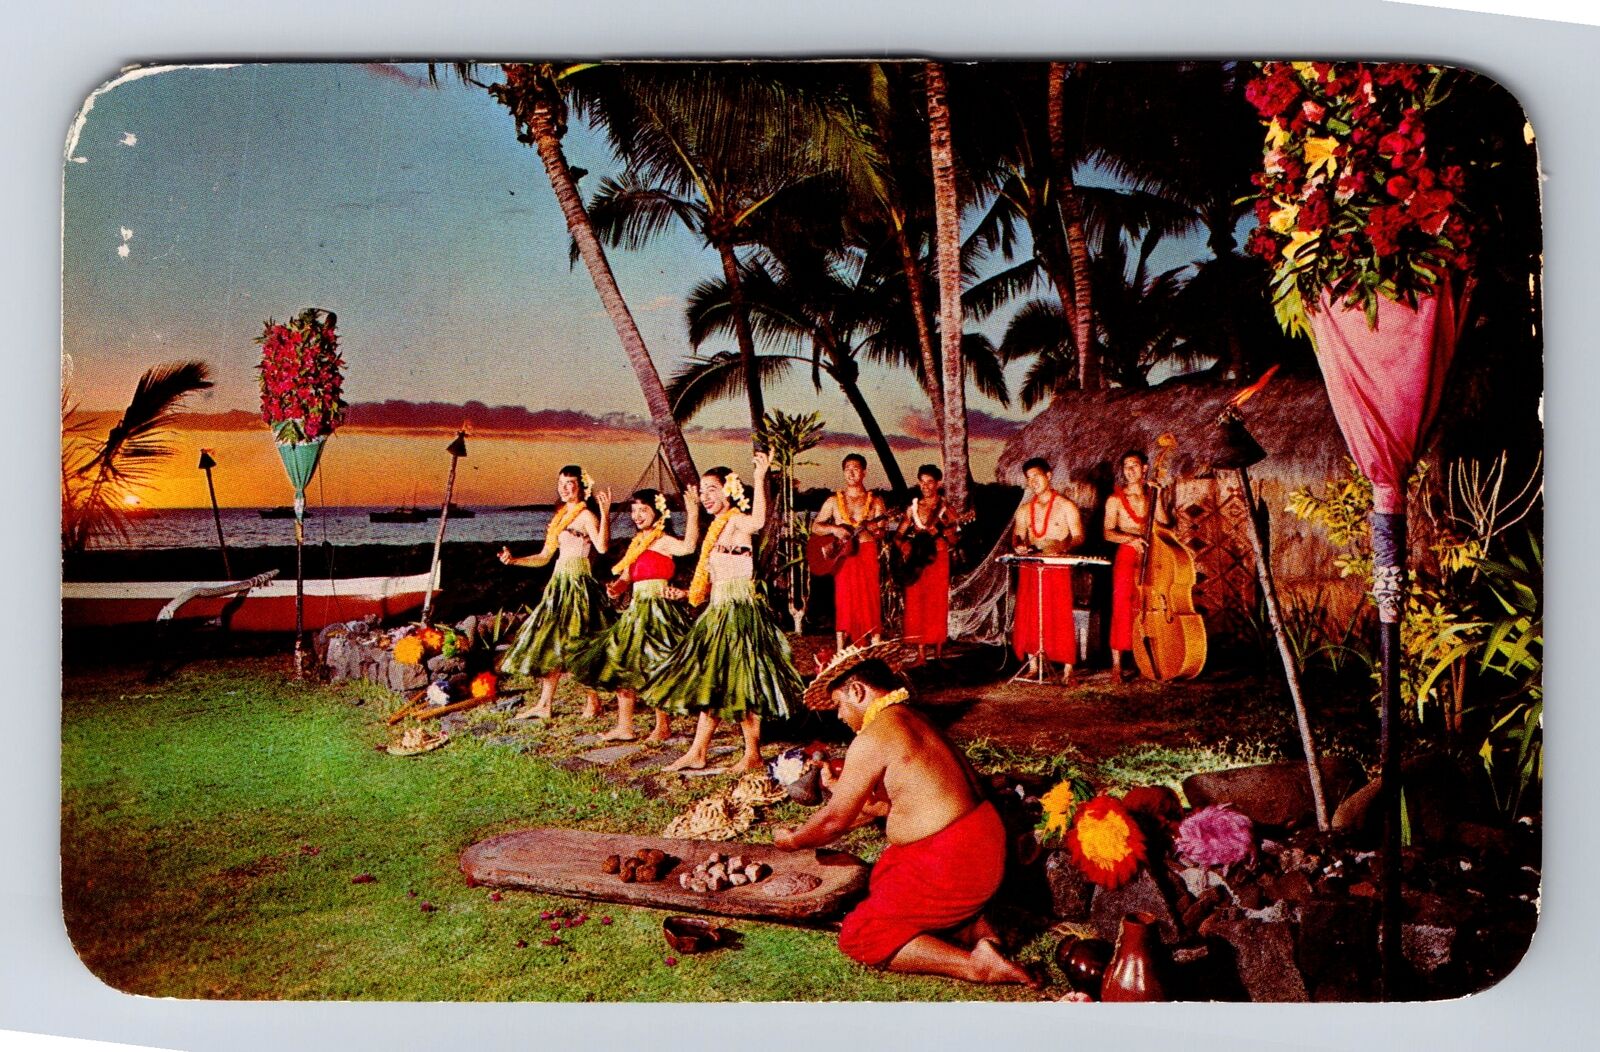 Hawaii HI-Hawaii, Kona Inn, Sunset Entertainment, Advertising Vintage Postcard